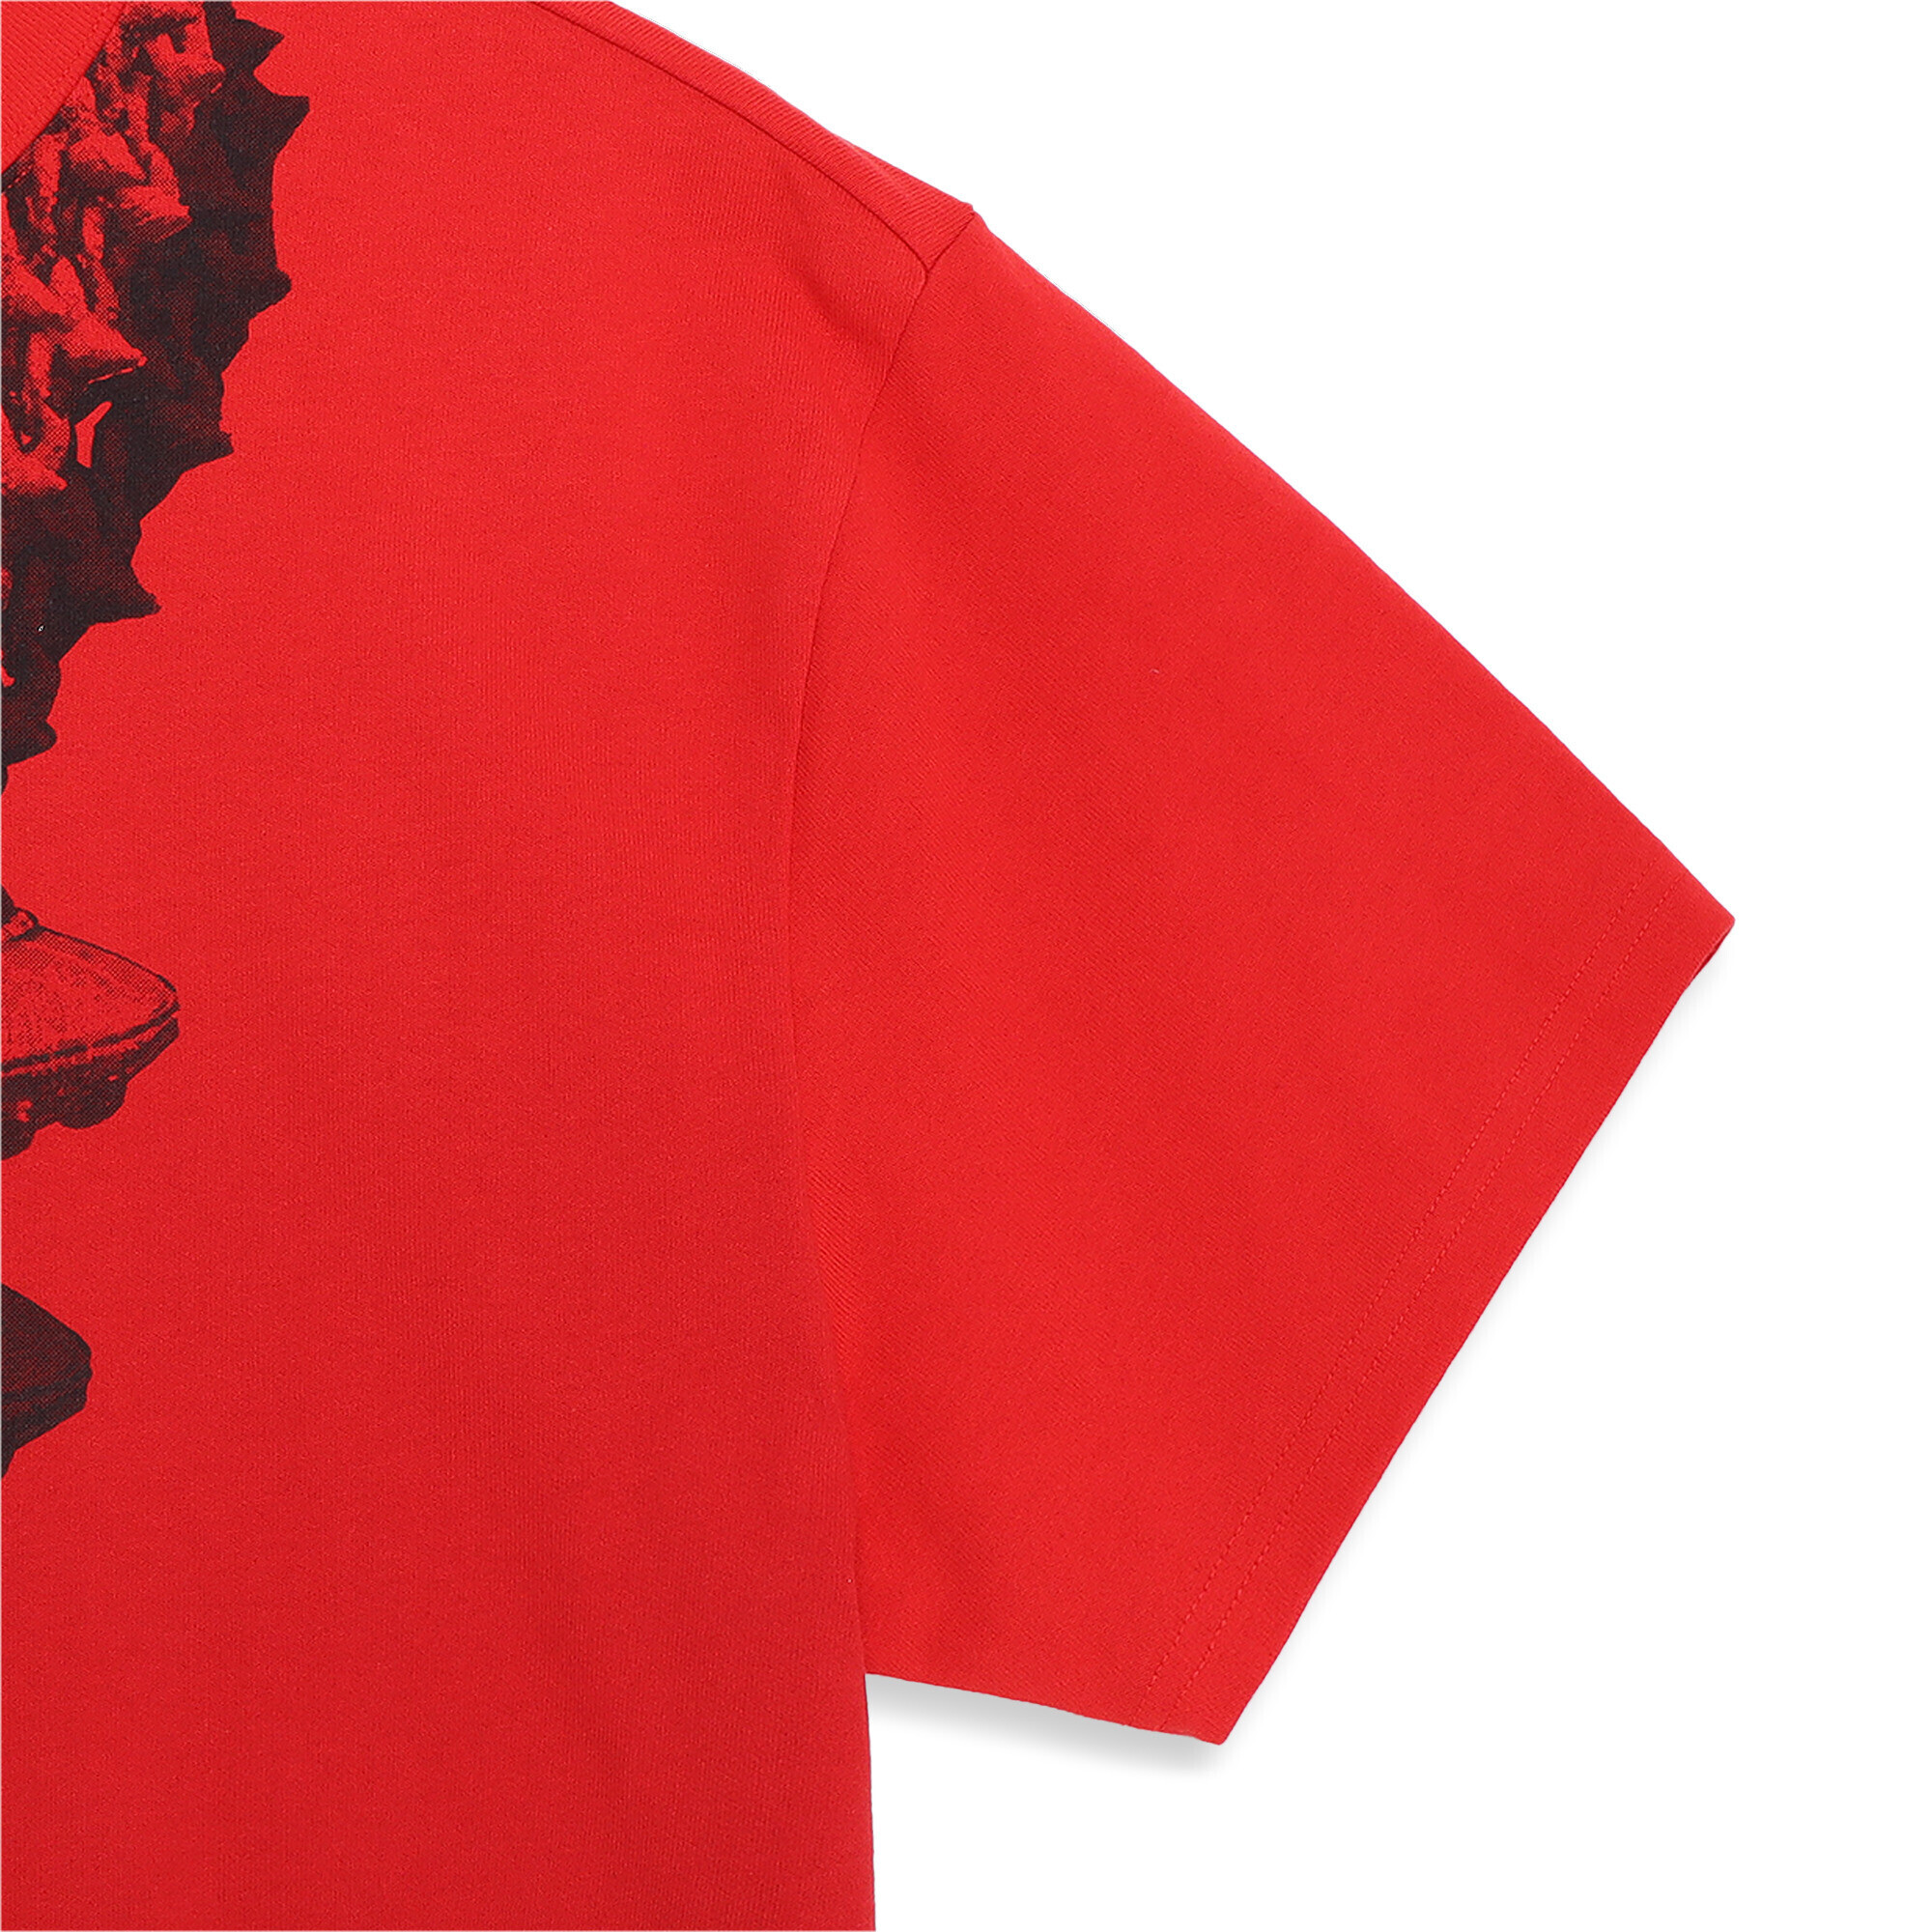 Men's PUMA X LAFRANCÃ T-Shirt In Red, Size Small